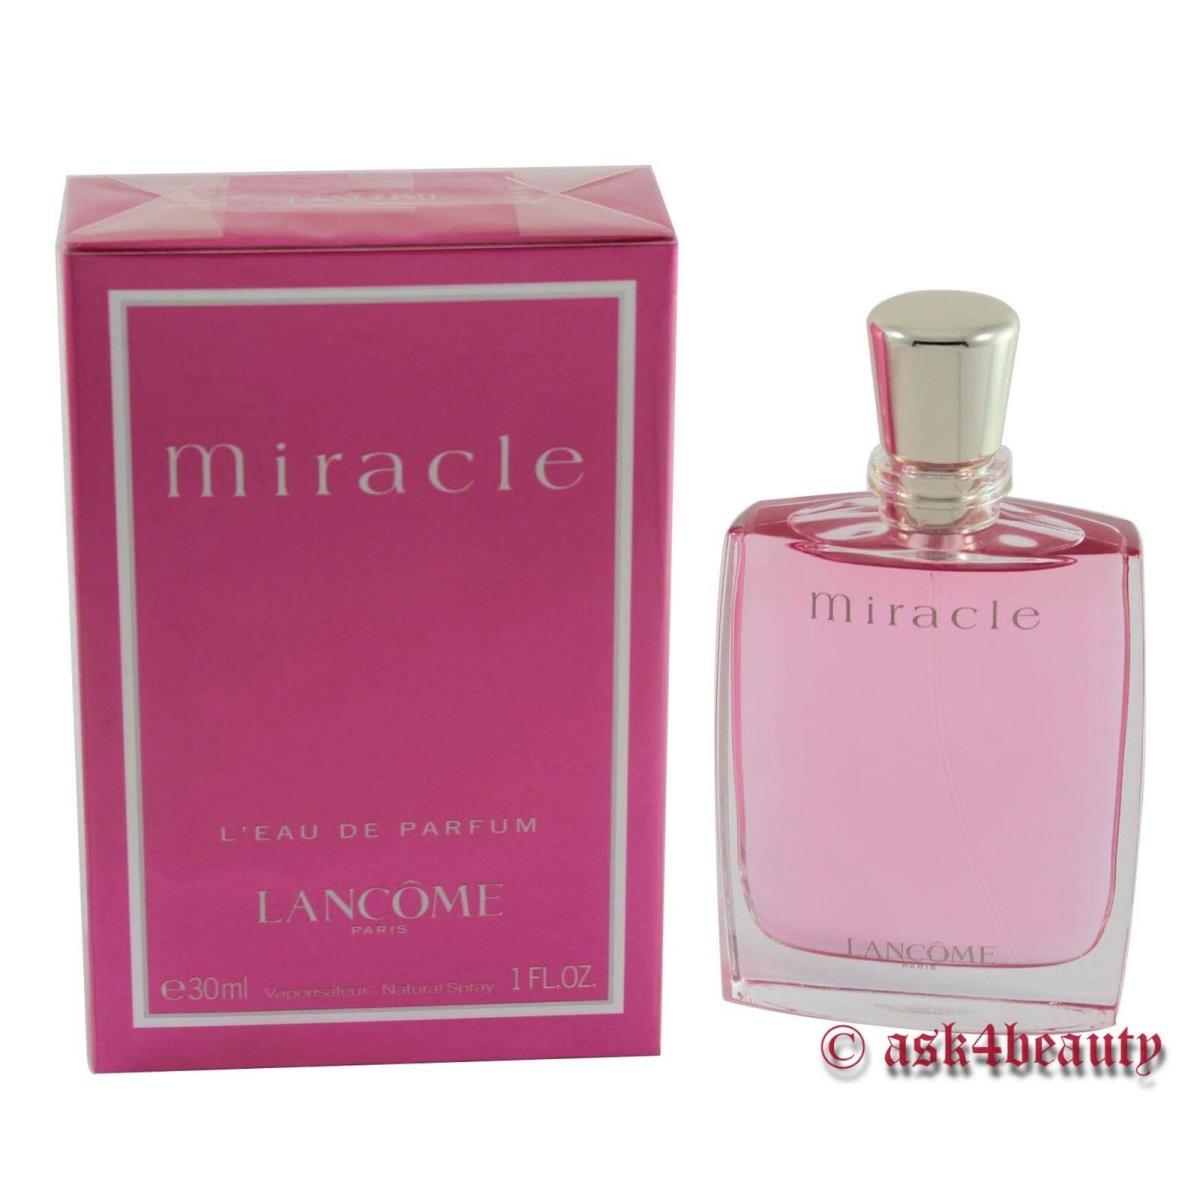 Miracle by Lancome 1.0 oz/30 ml Eau De Perfume Spray For Women